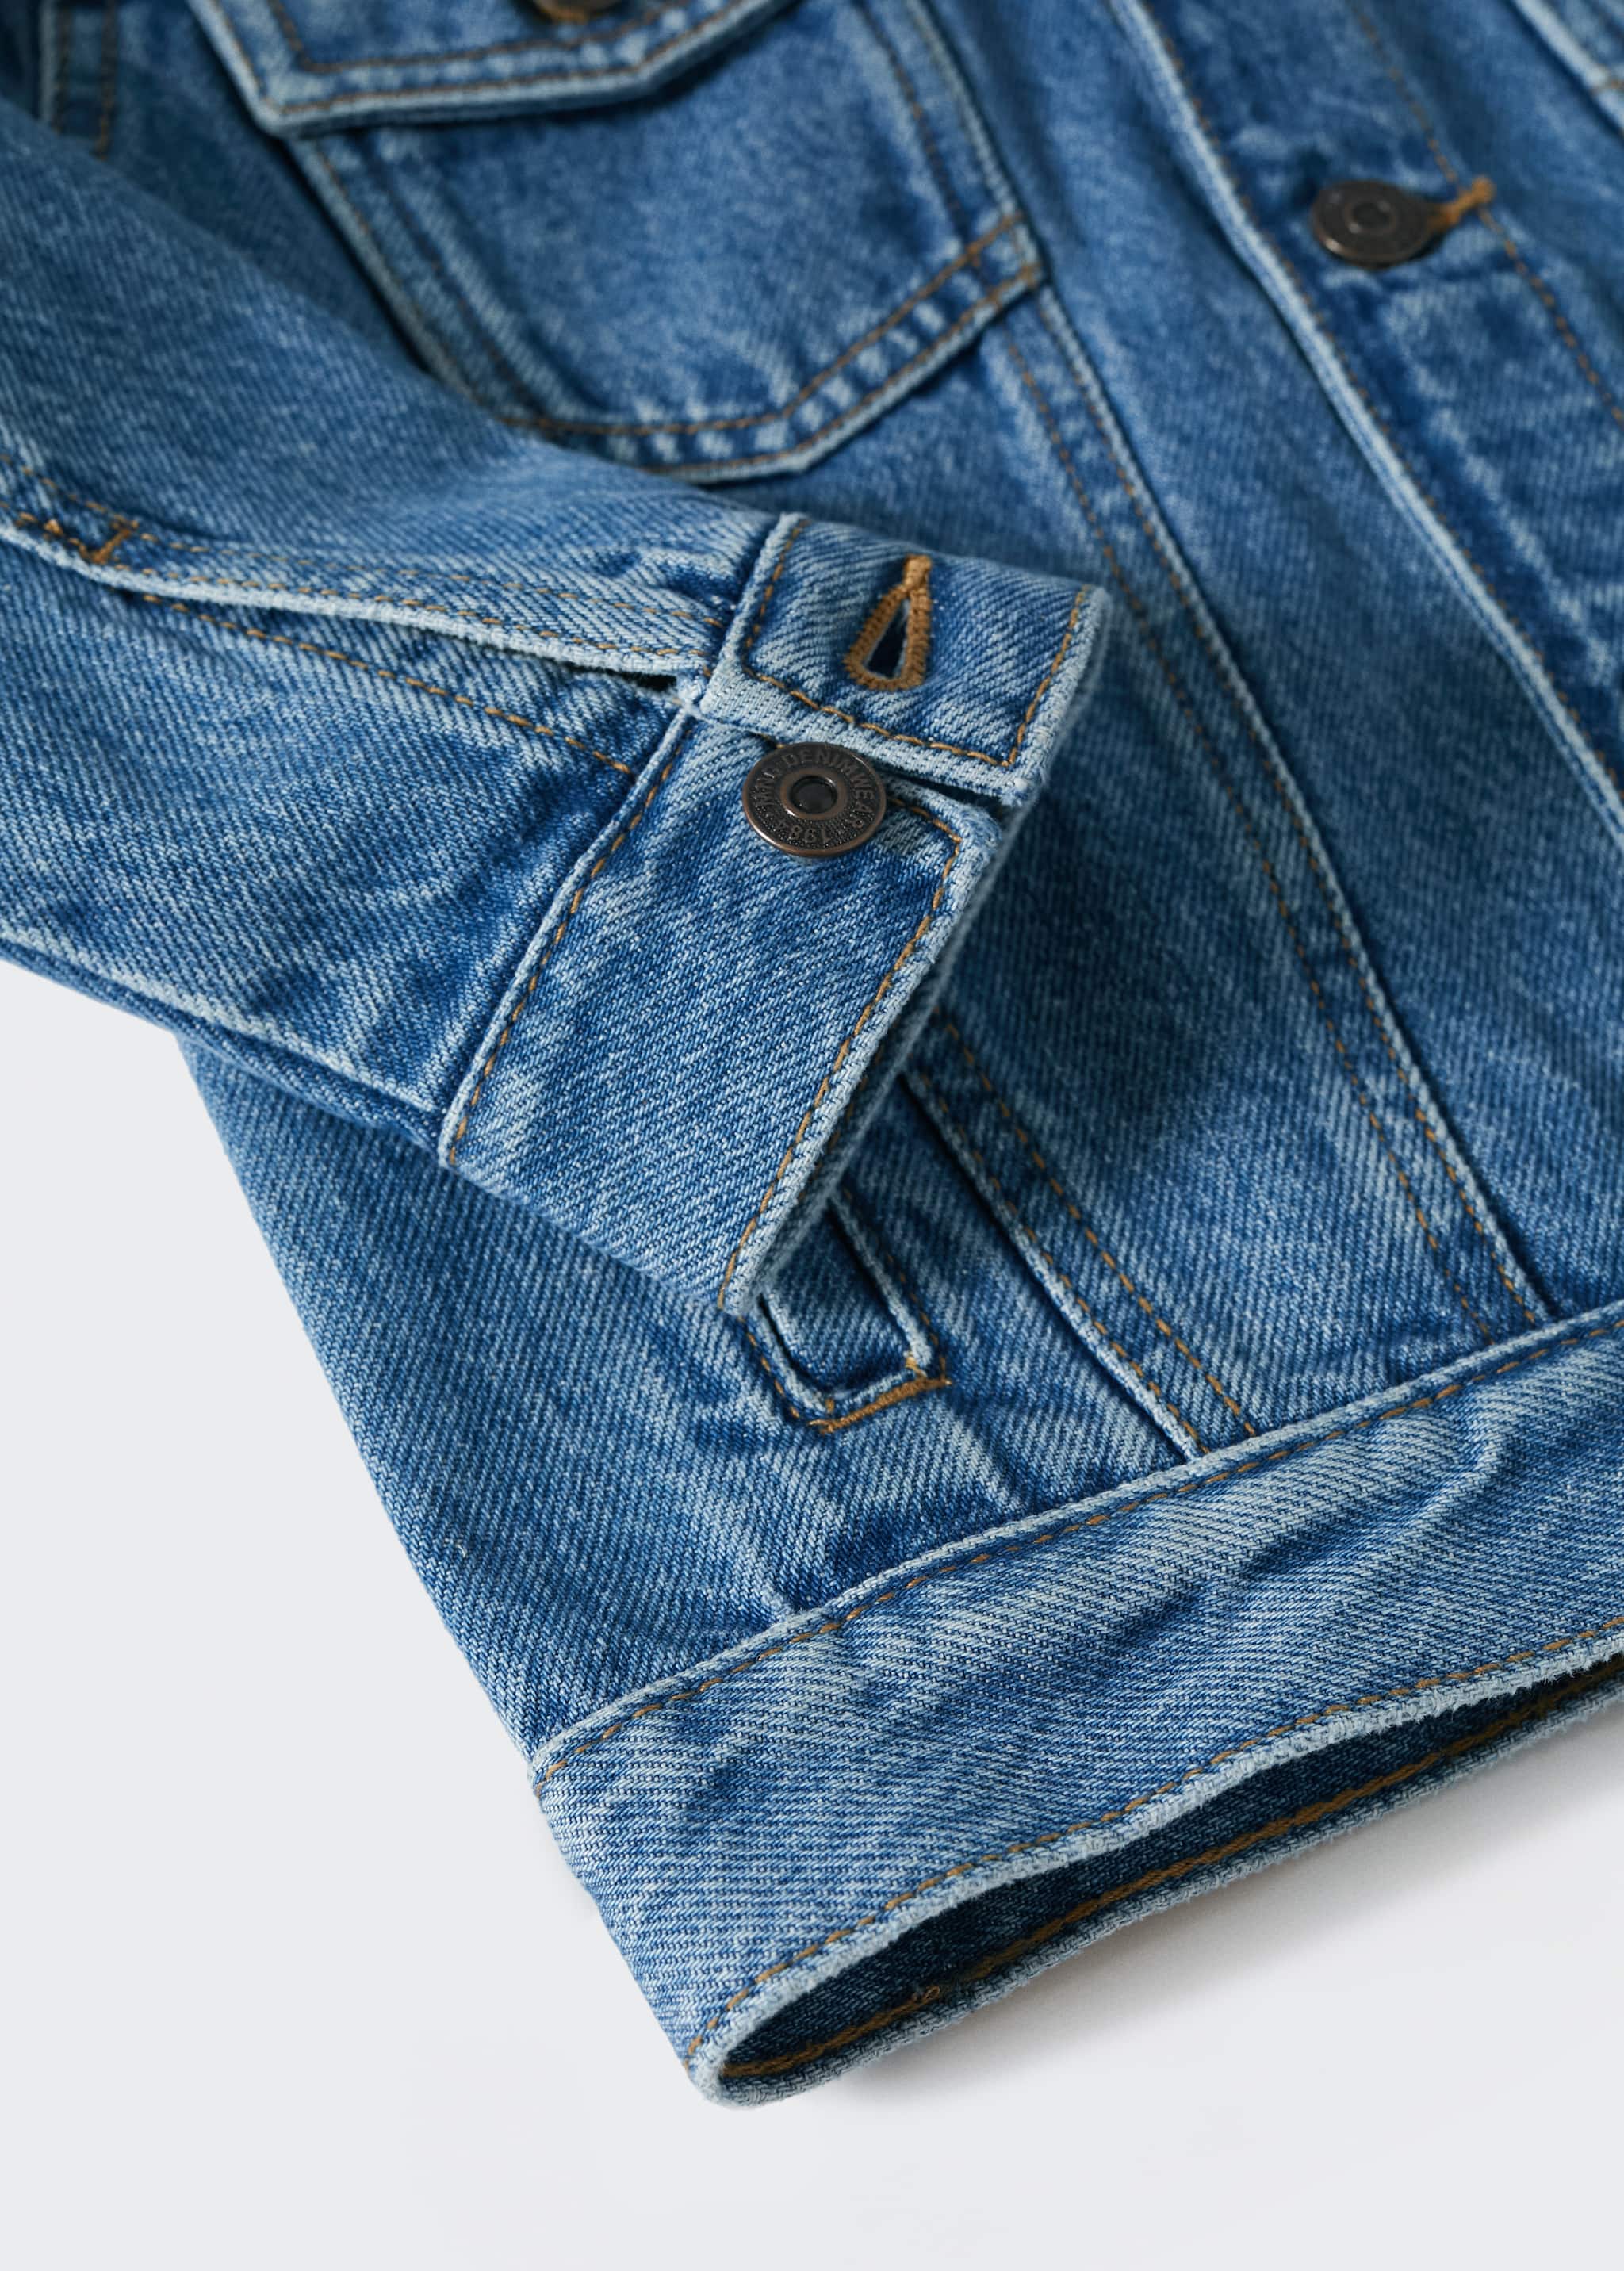 Pockets denim jacket - Details of the article 8